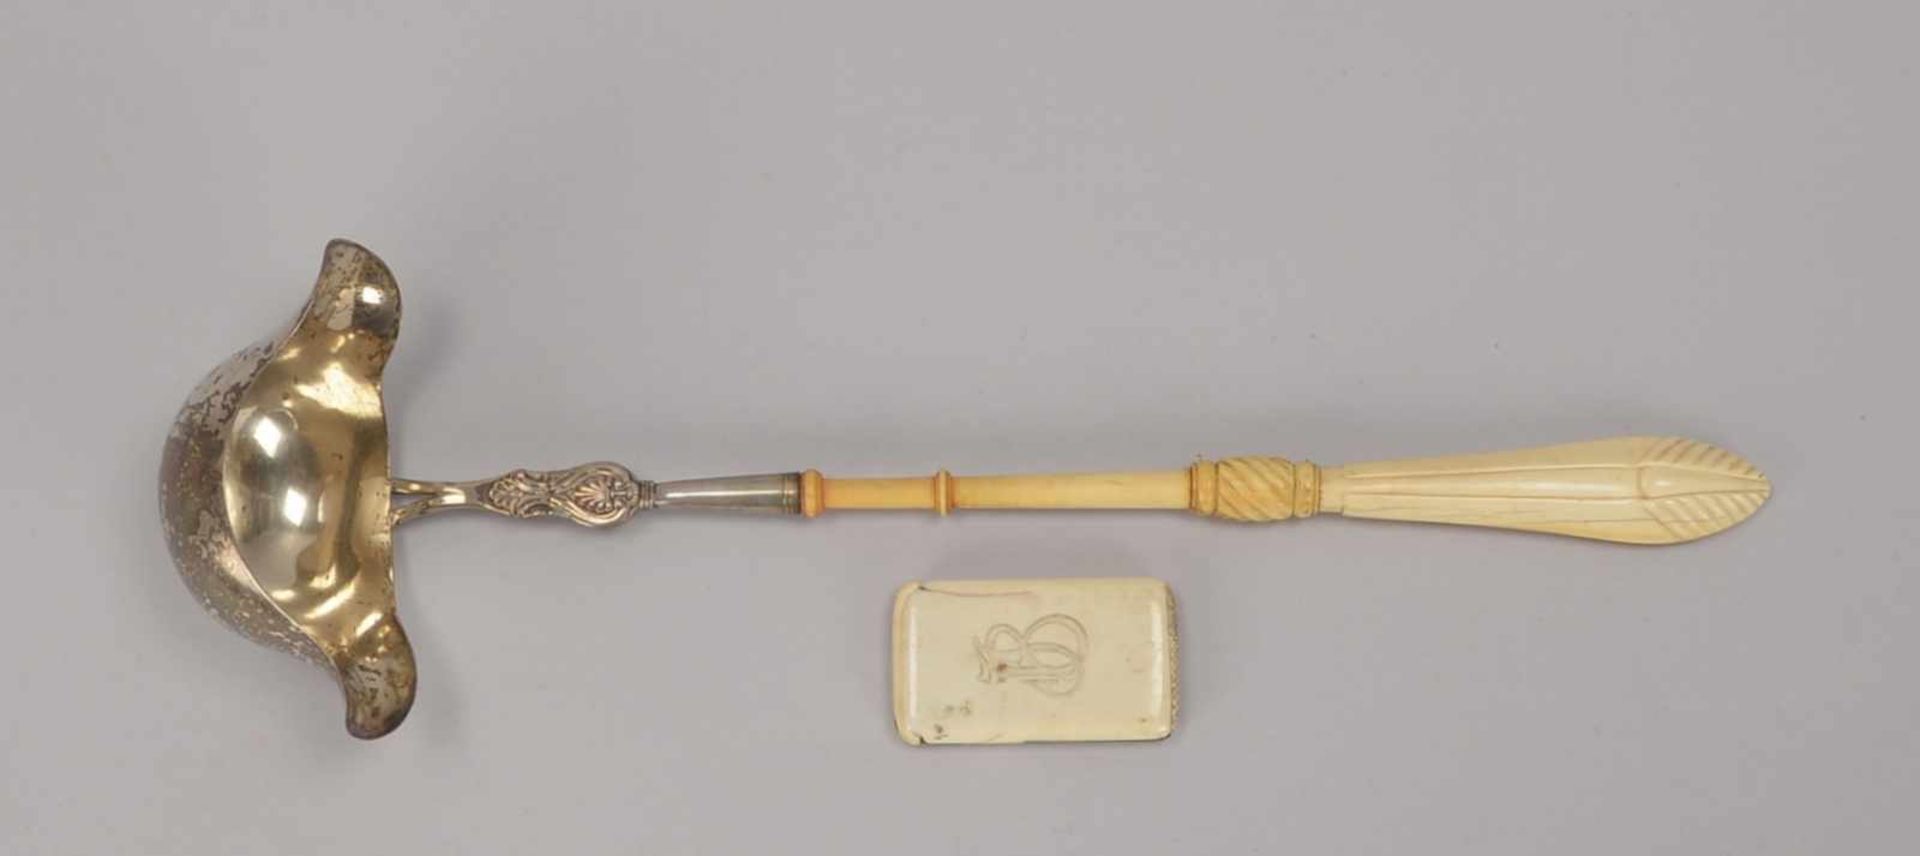 Bowlenkelle, antik, Silber (geprüft), mit Bein-Griff; und Zündholz-Etui, antik, aus Bein